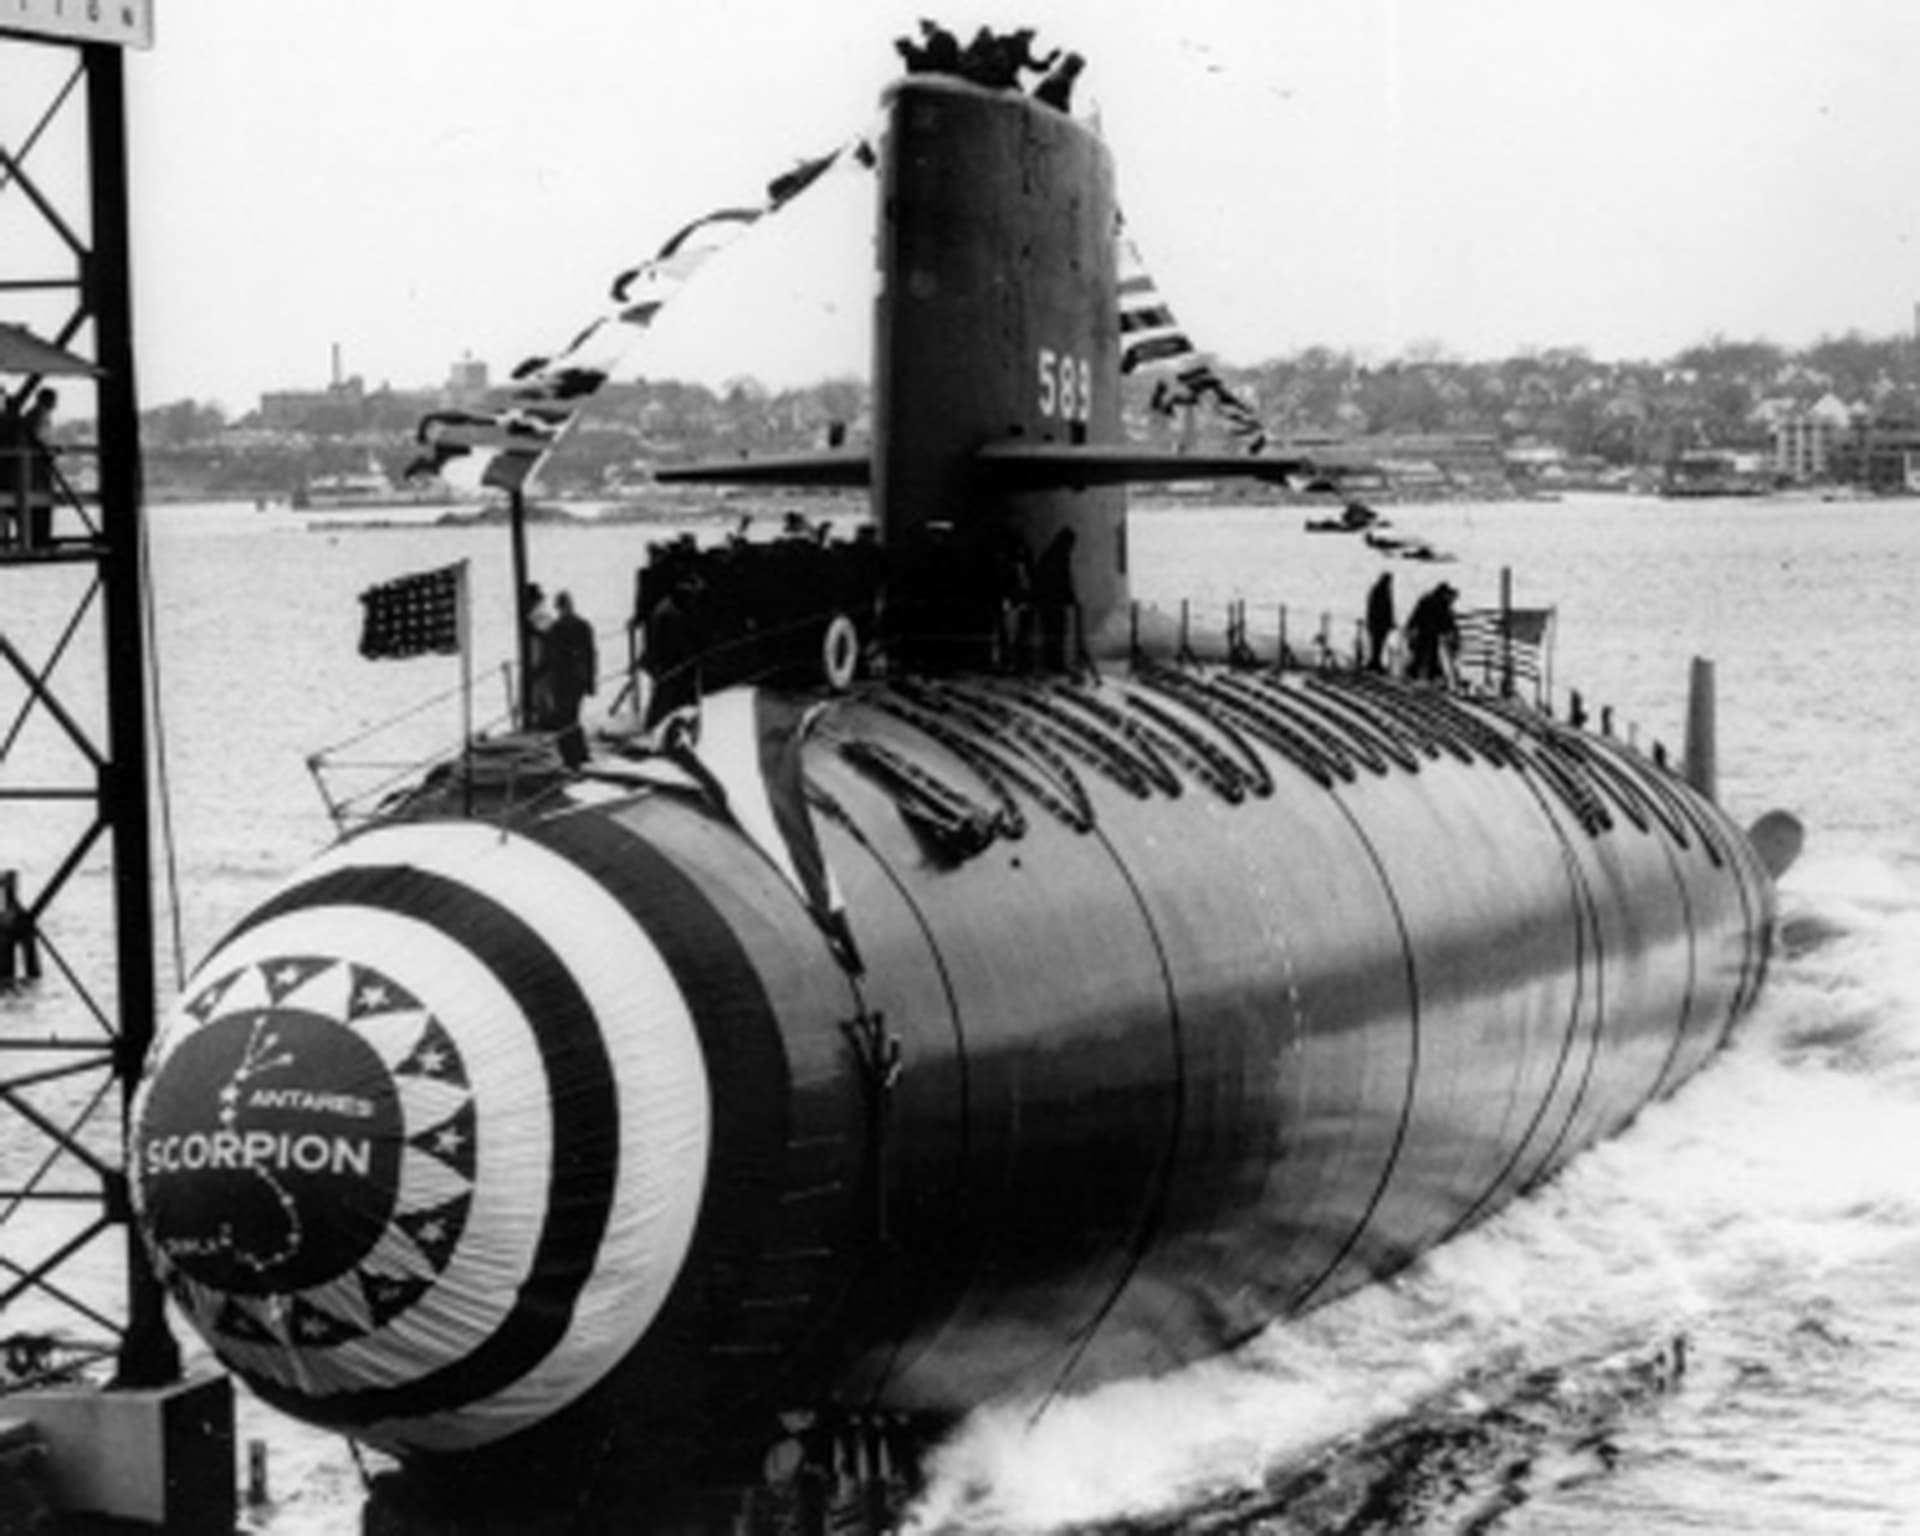 Tàu ngầm hạt nhân USS SSN-589 Scorpion của Mỹ trước khi bị chìm (ảnh: Daily Mail)